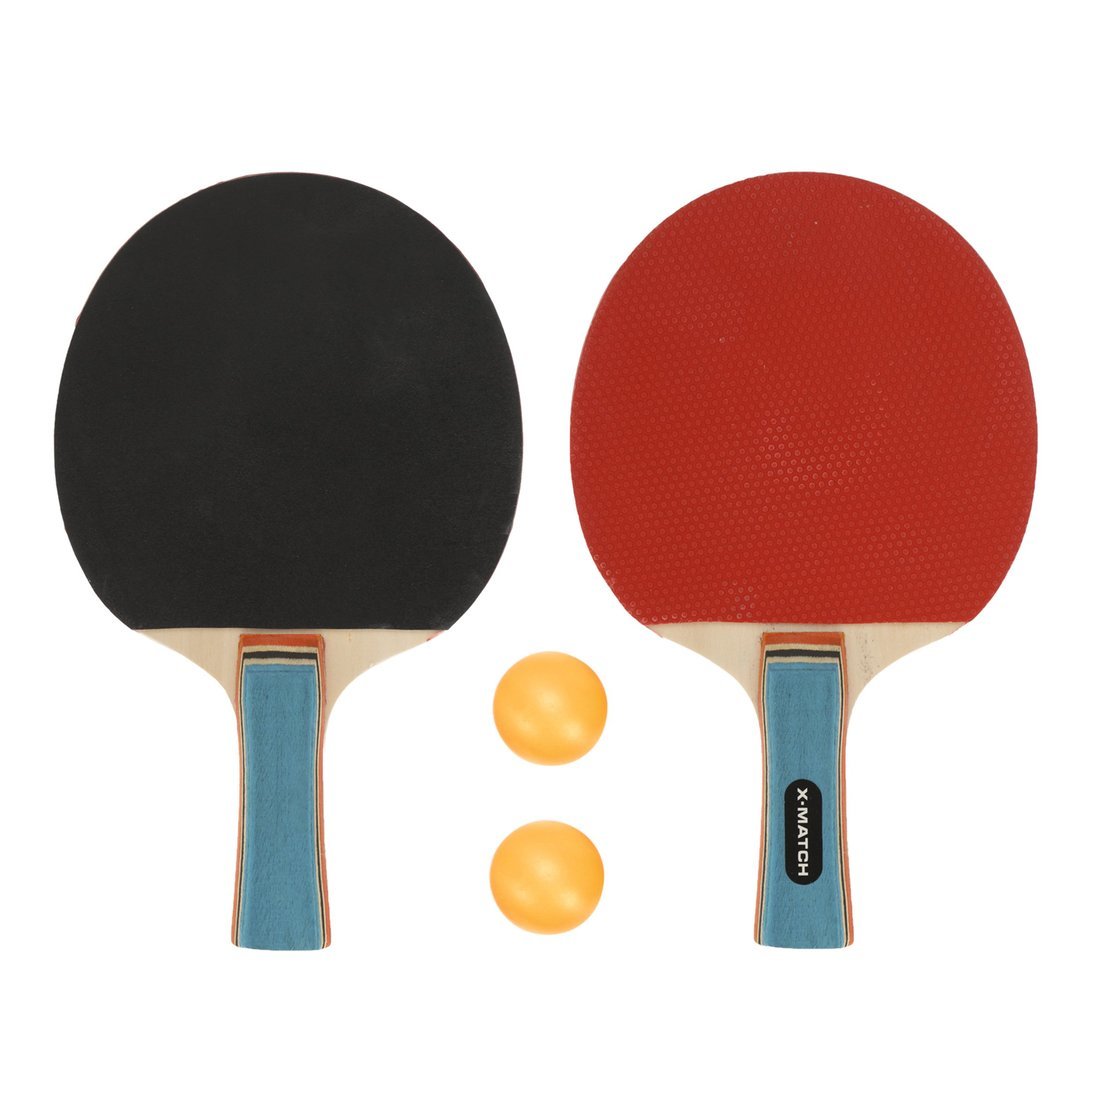 Набор для настольного тенниса X-Match (2 ракетки 8 мм., 2 шарика) 636271 ракетка для настольного тенниса start line level 100 коническая 12202